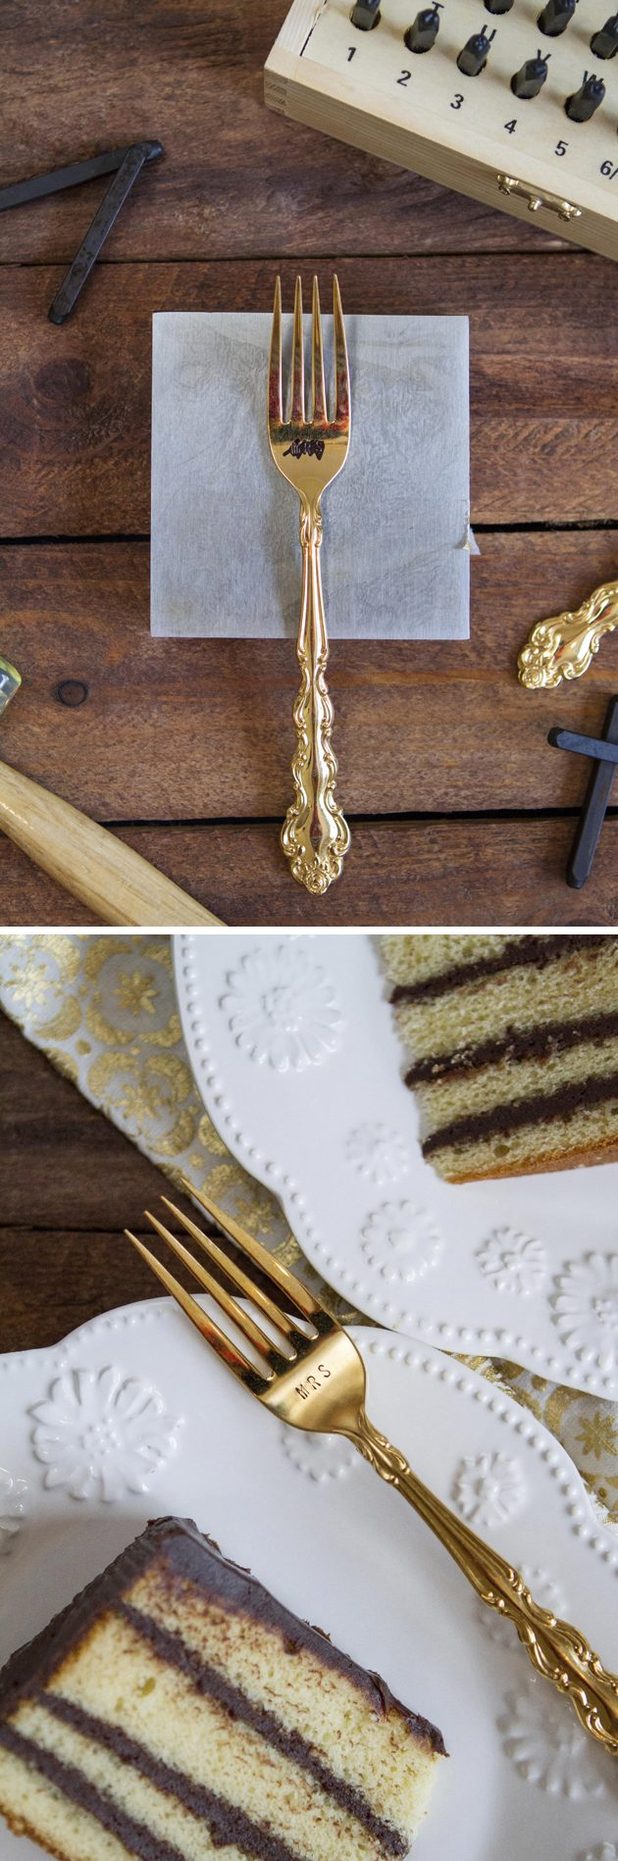 Gâteau envoyé Tellement fantaisistes Lorsqu'ils sont consommés à partir d'une fourchette personnalisé.